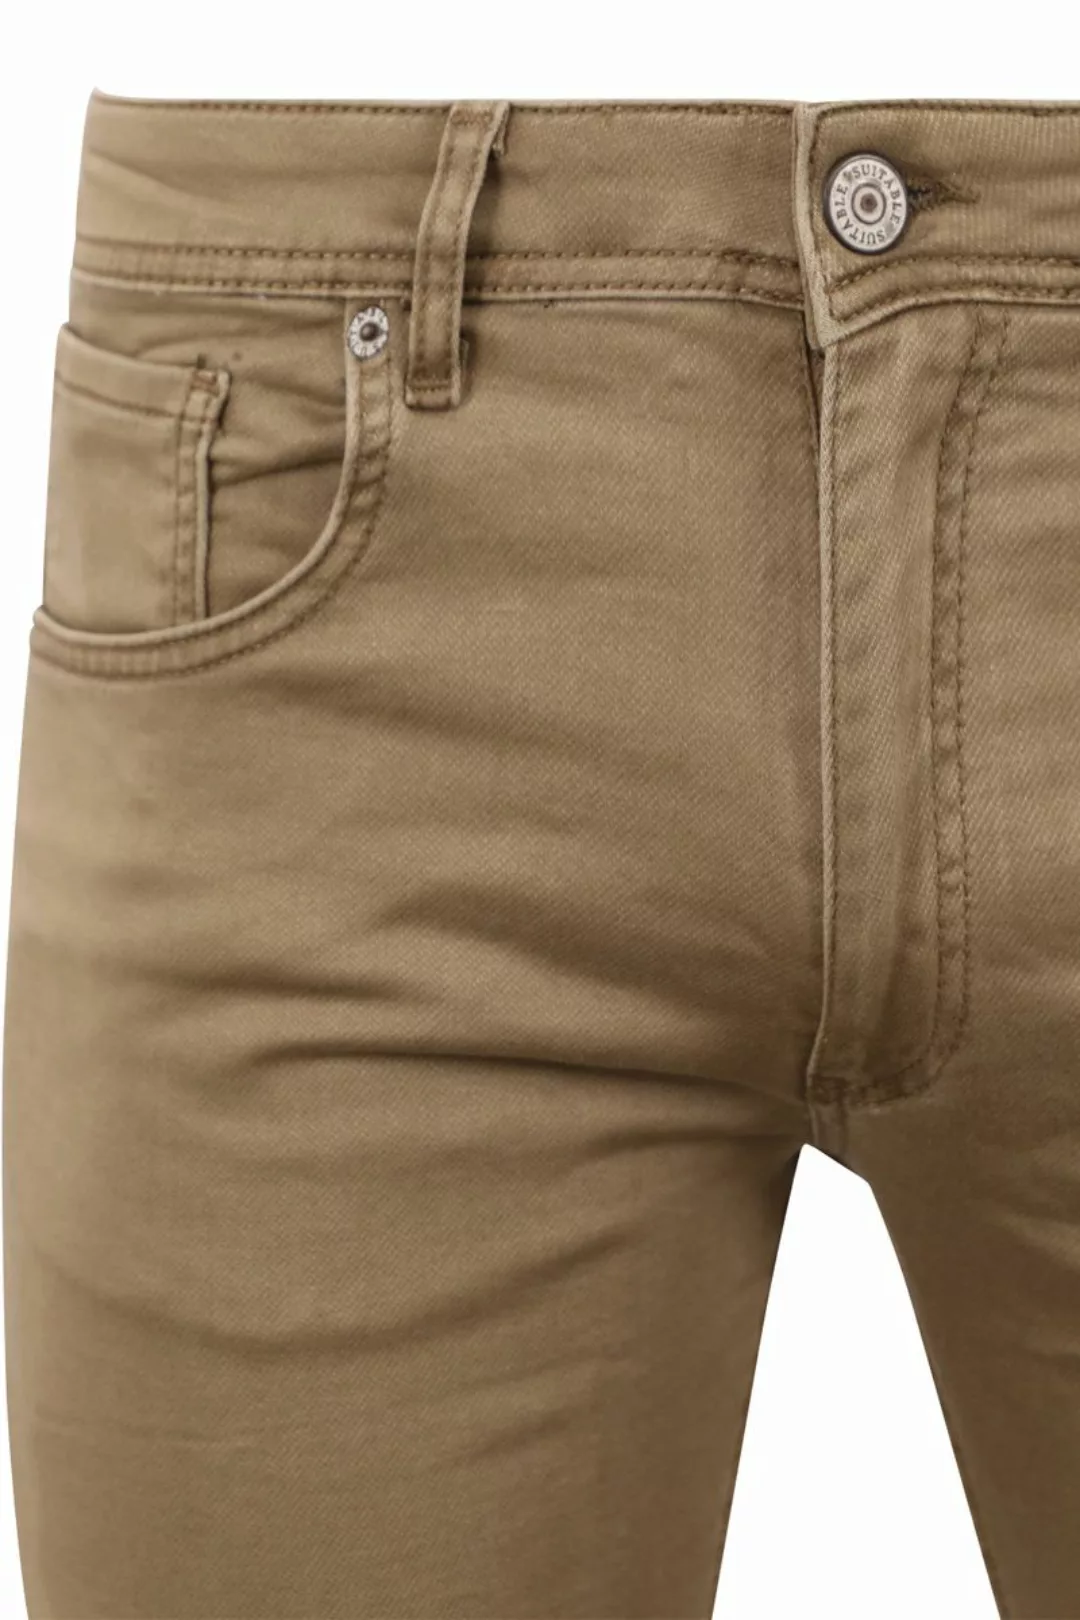 Suitable Kant Jeans Khaki - Größe W 32 - L 34 günstig online kaufen